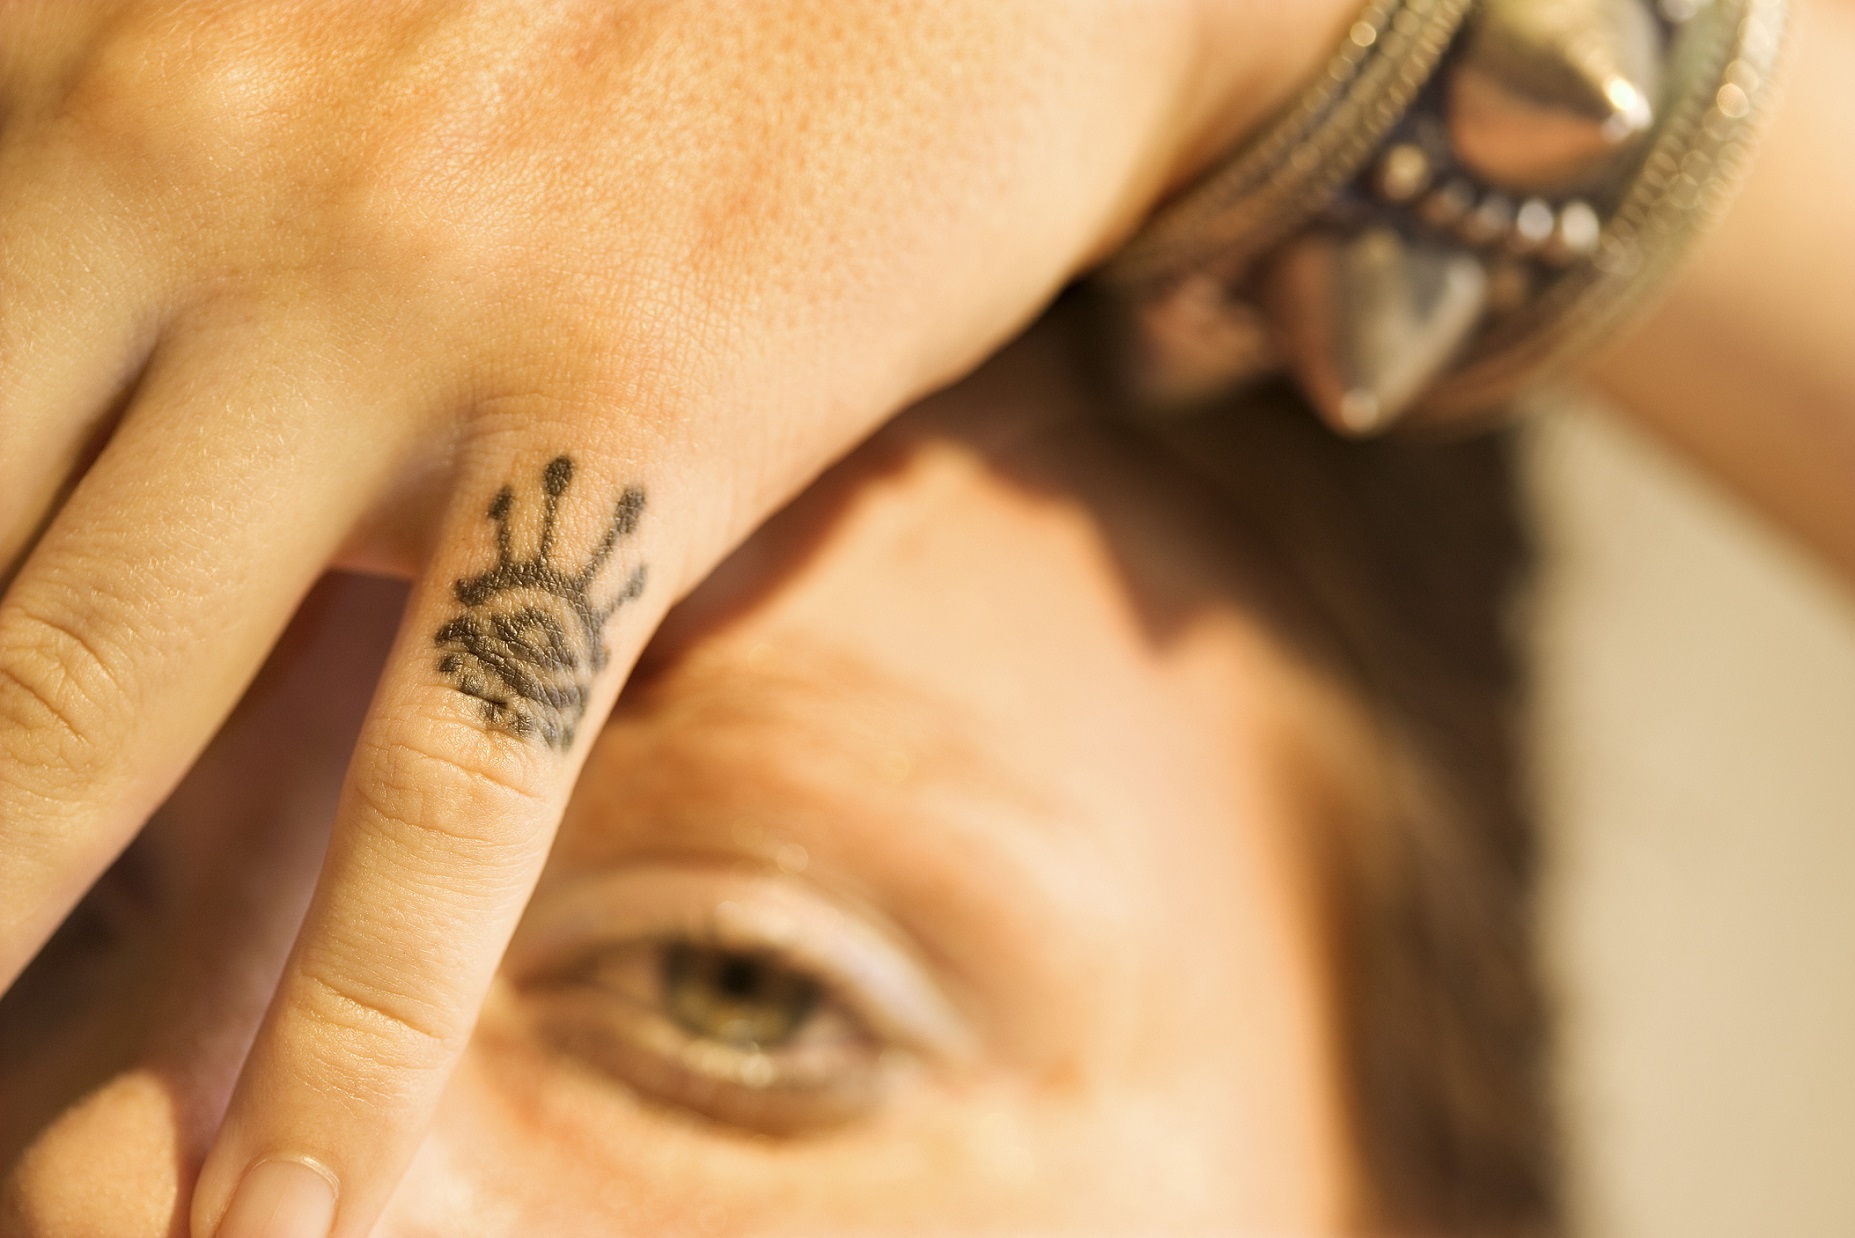 Tatuaggi sulle mani, le idee a cui ispirarvi